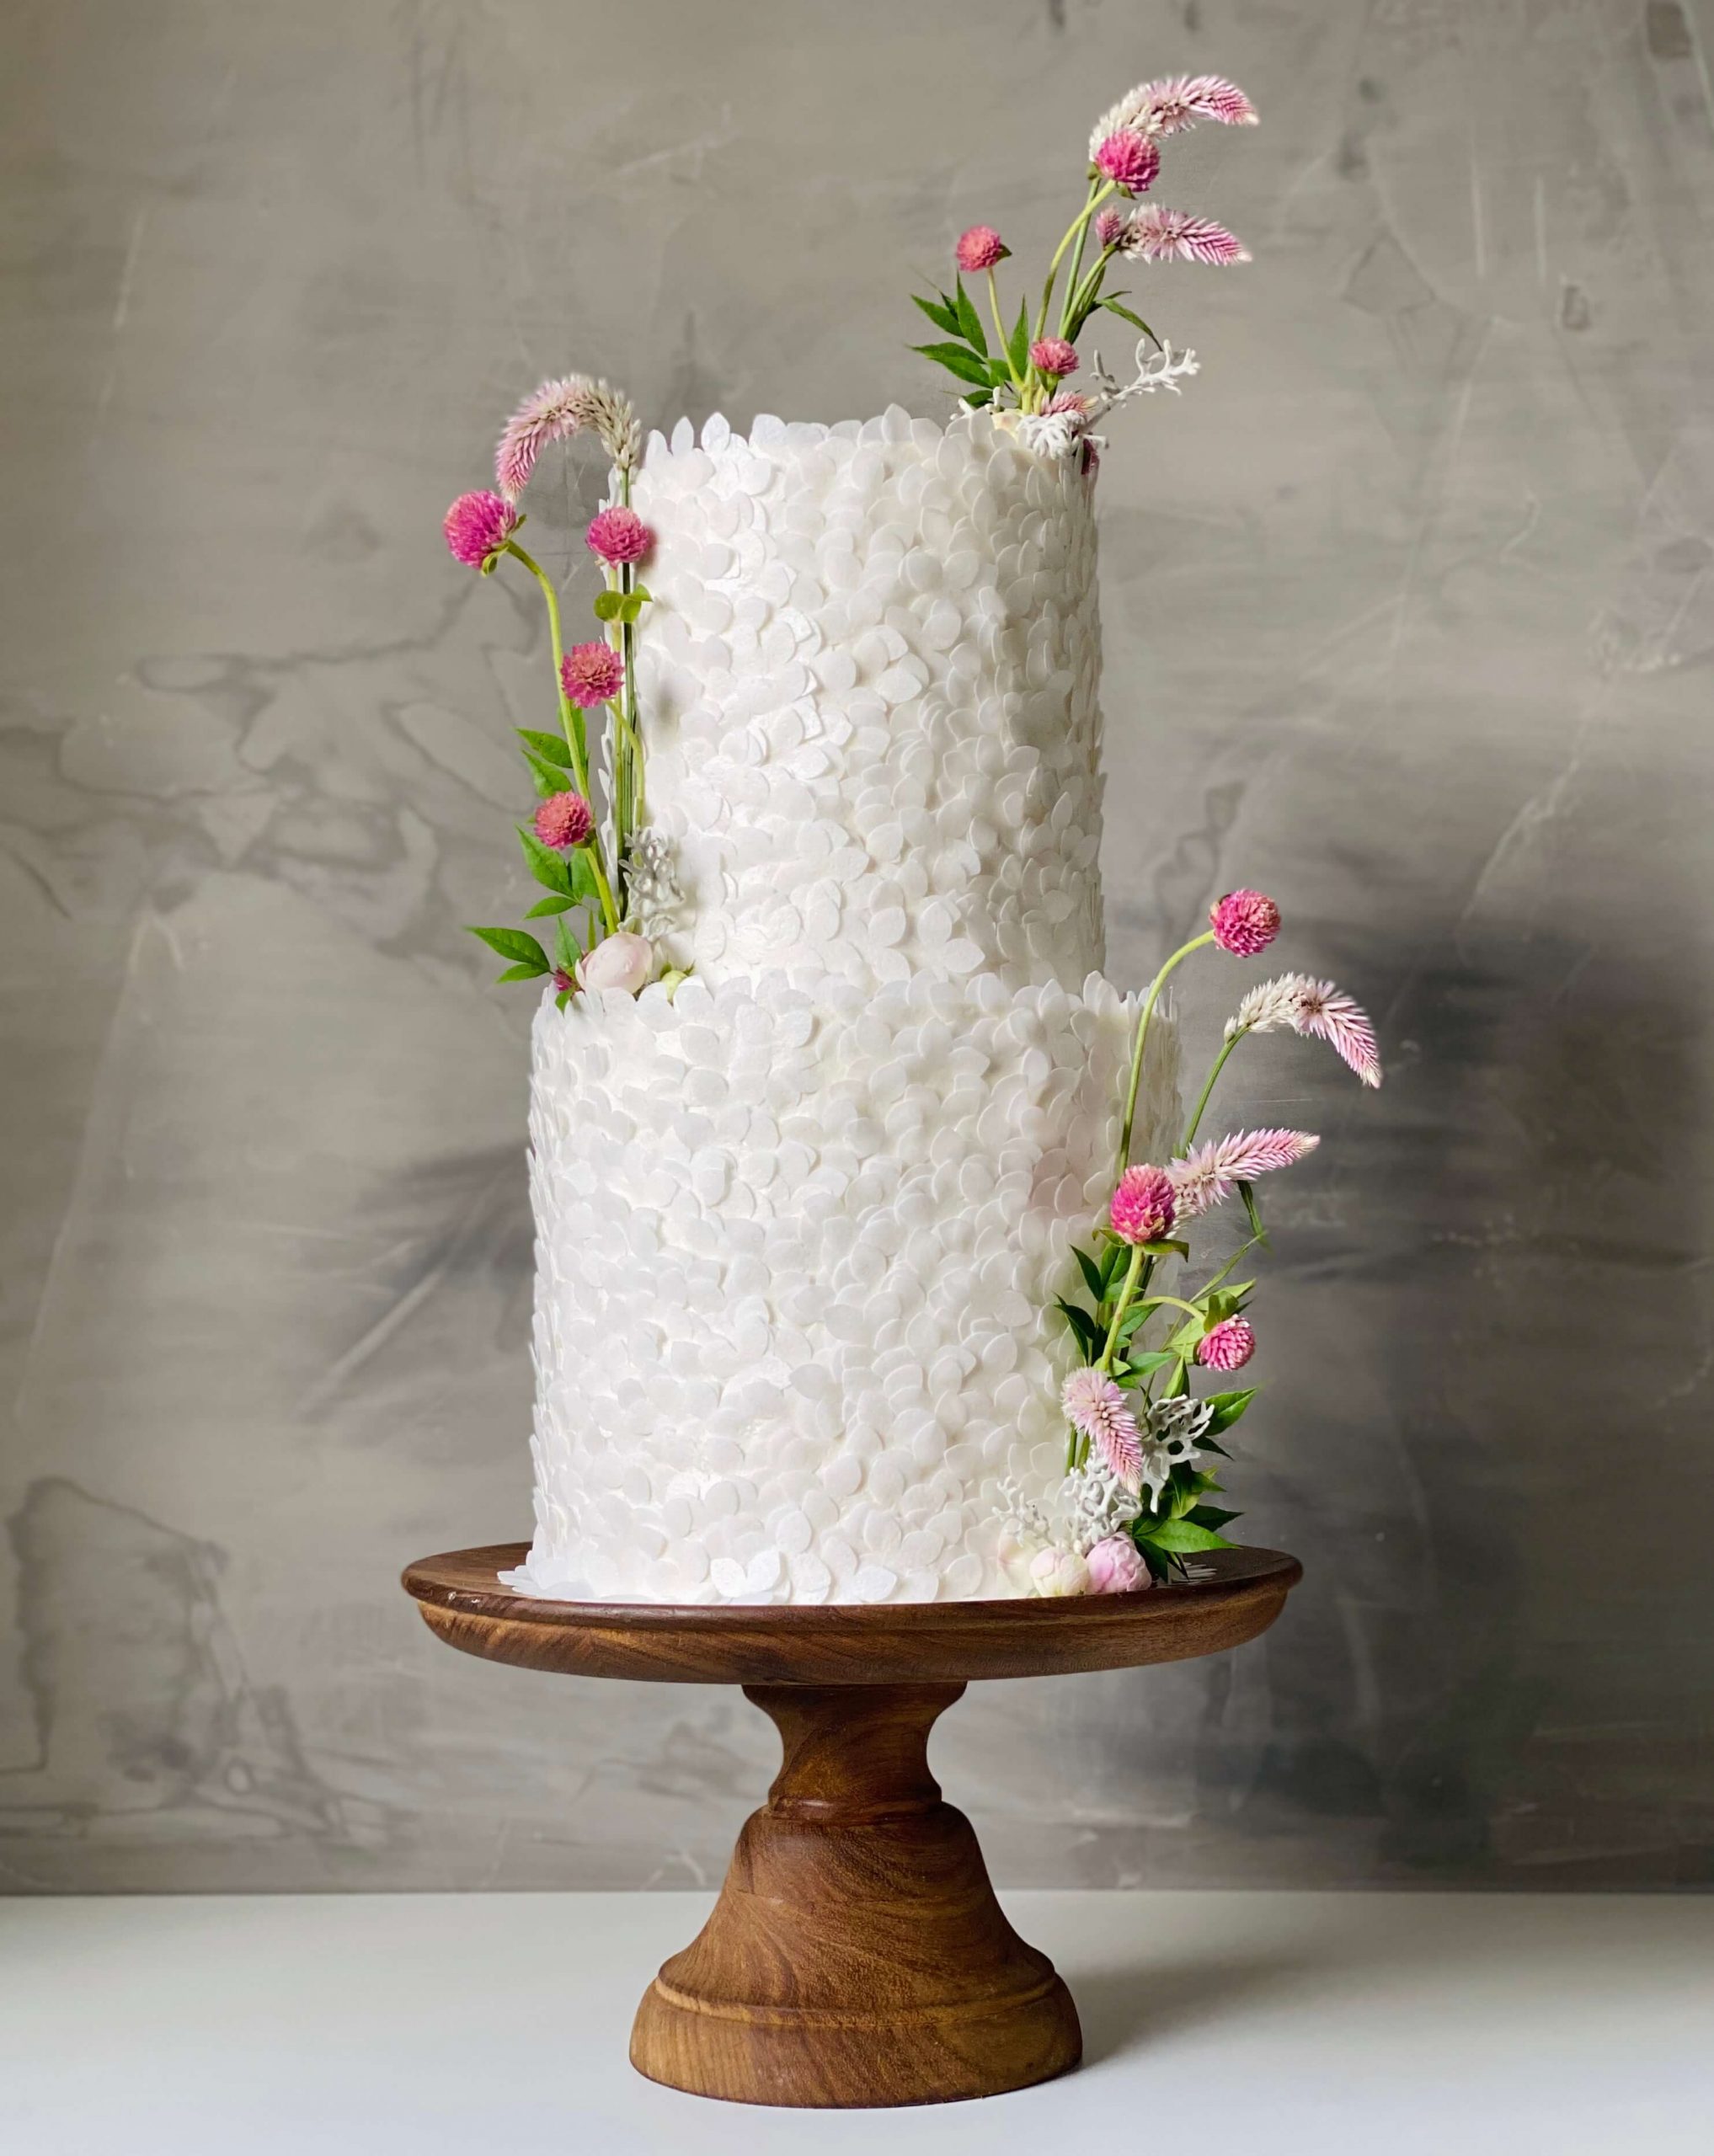 Baking Dreams: bolos e doces de casamento com exclusividade, beleza e sabor inigualável